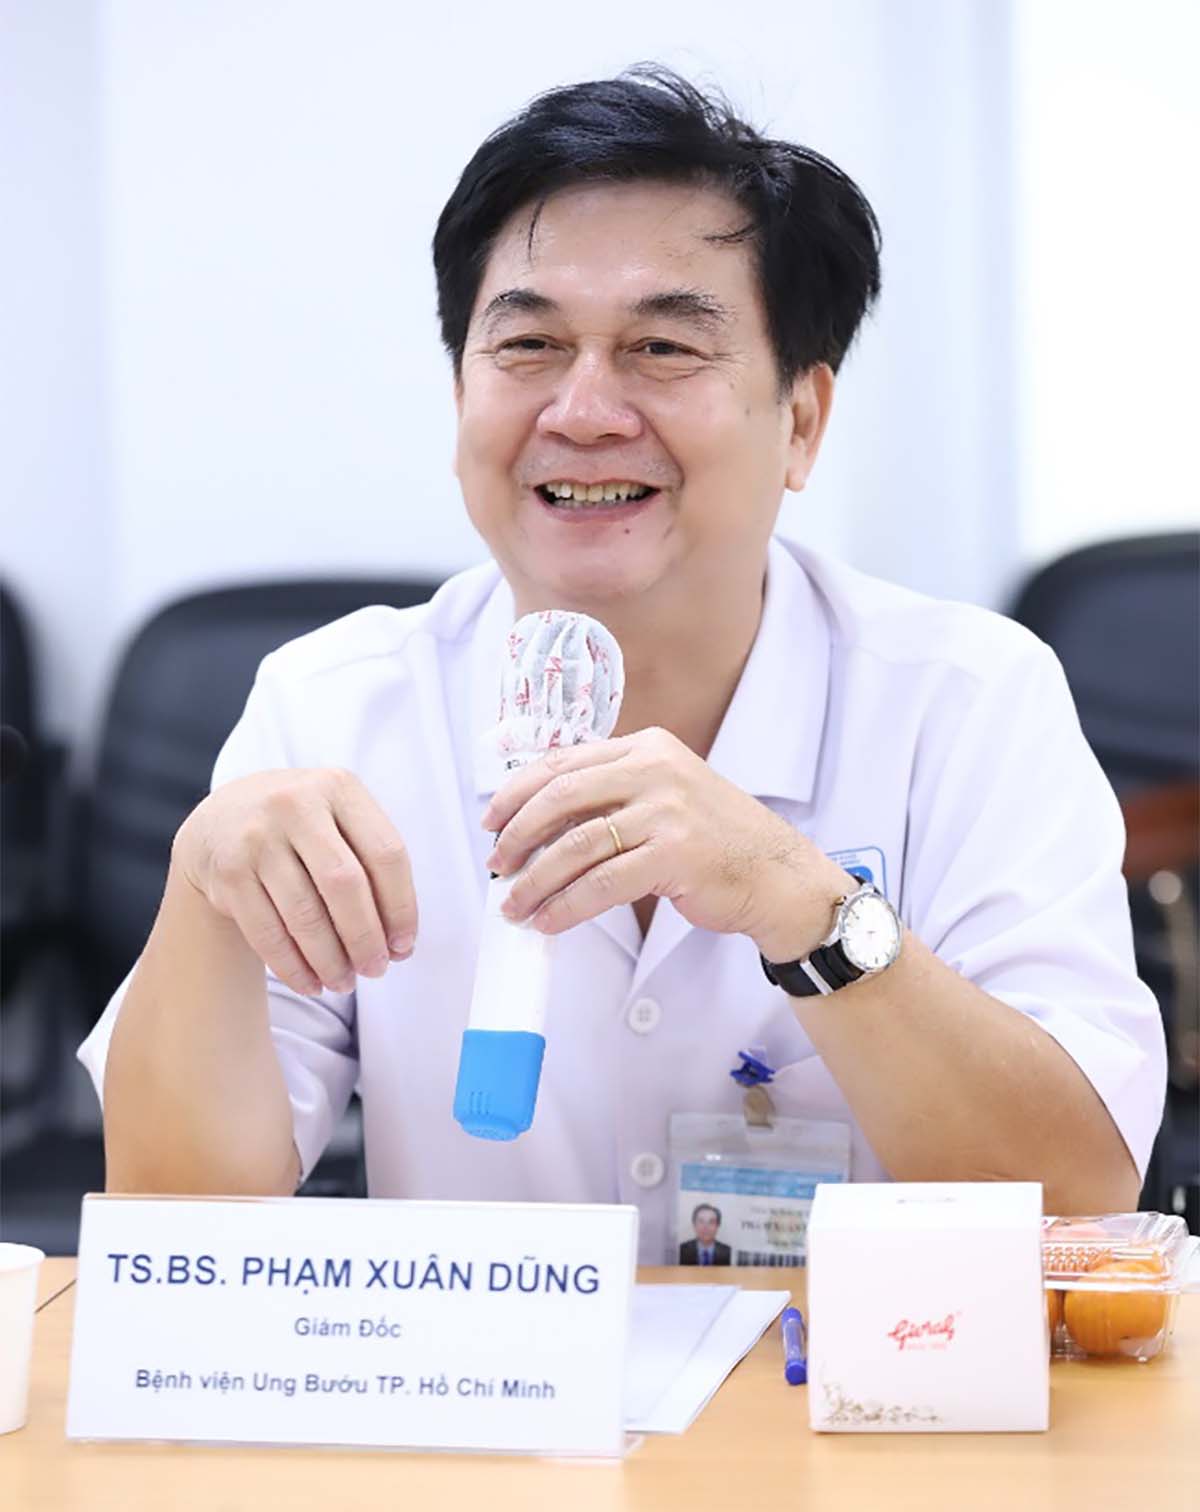 TS.BS Phạm Xuân Dũng - Giám đốc Bệnh viện Ung Bướu Thành phố Hồ Chí Minh